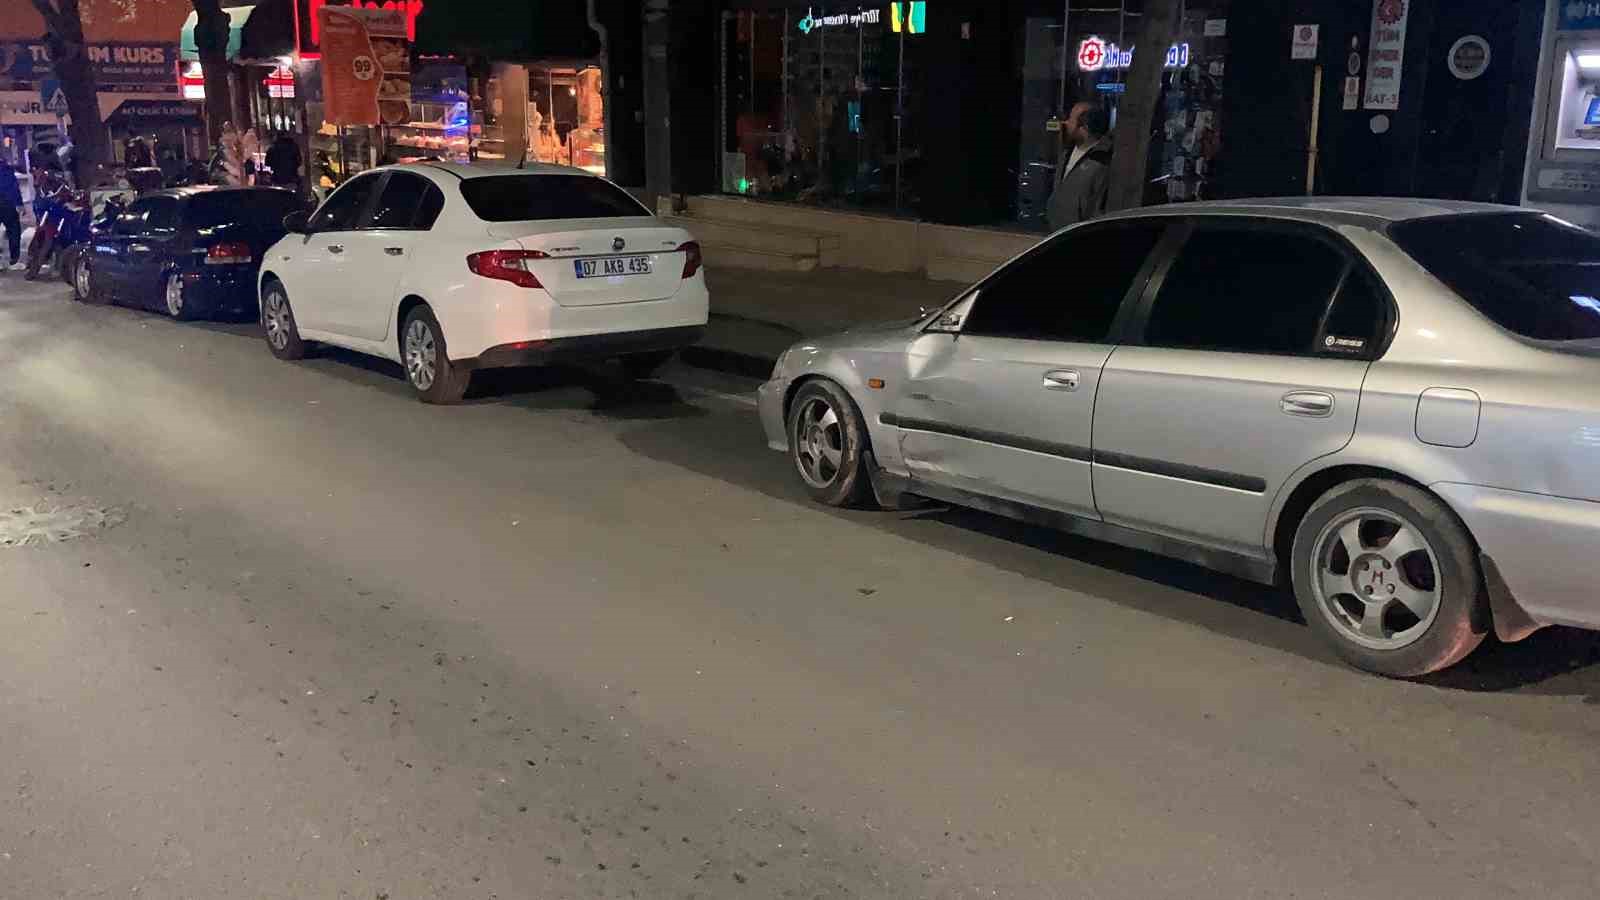 Burdur’da otomobile çarpıp sürüklenen motosikletli genç ağır yaralandı
